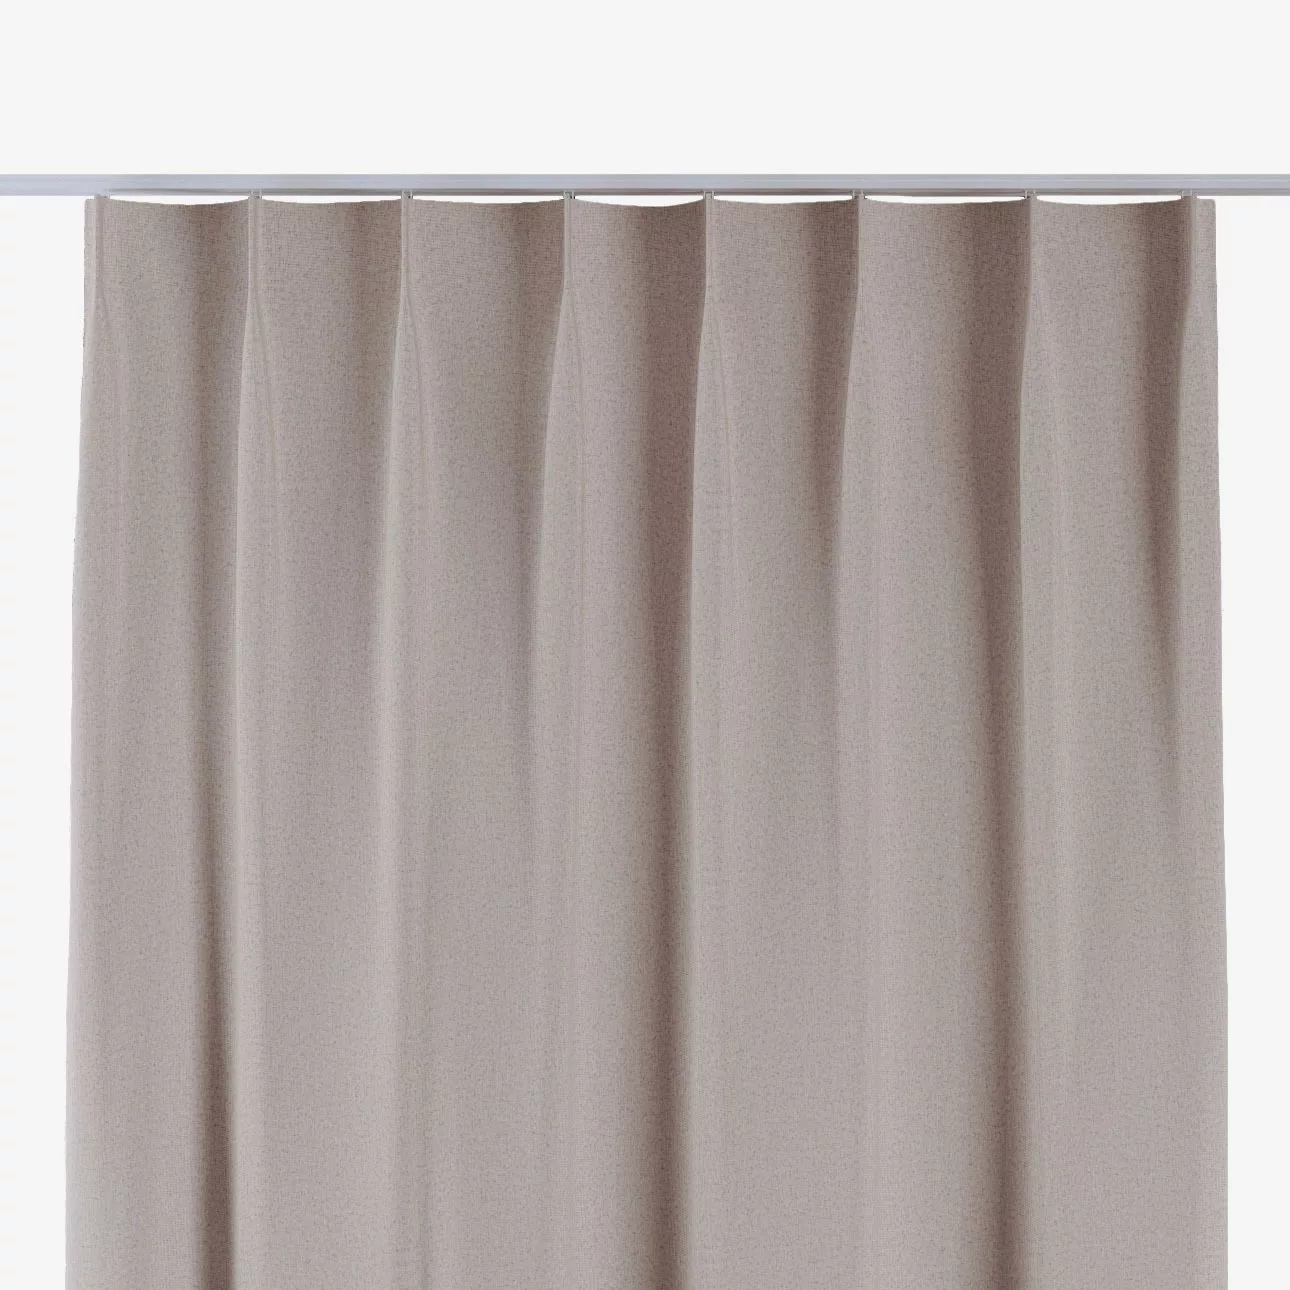 Vorhang mit flämischen 1-er Falten, dunkelbeige, Blackout Soft (269-25) günstig online kaufen